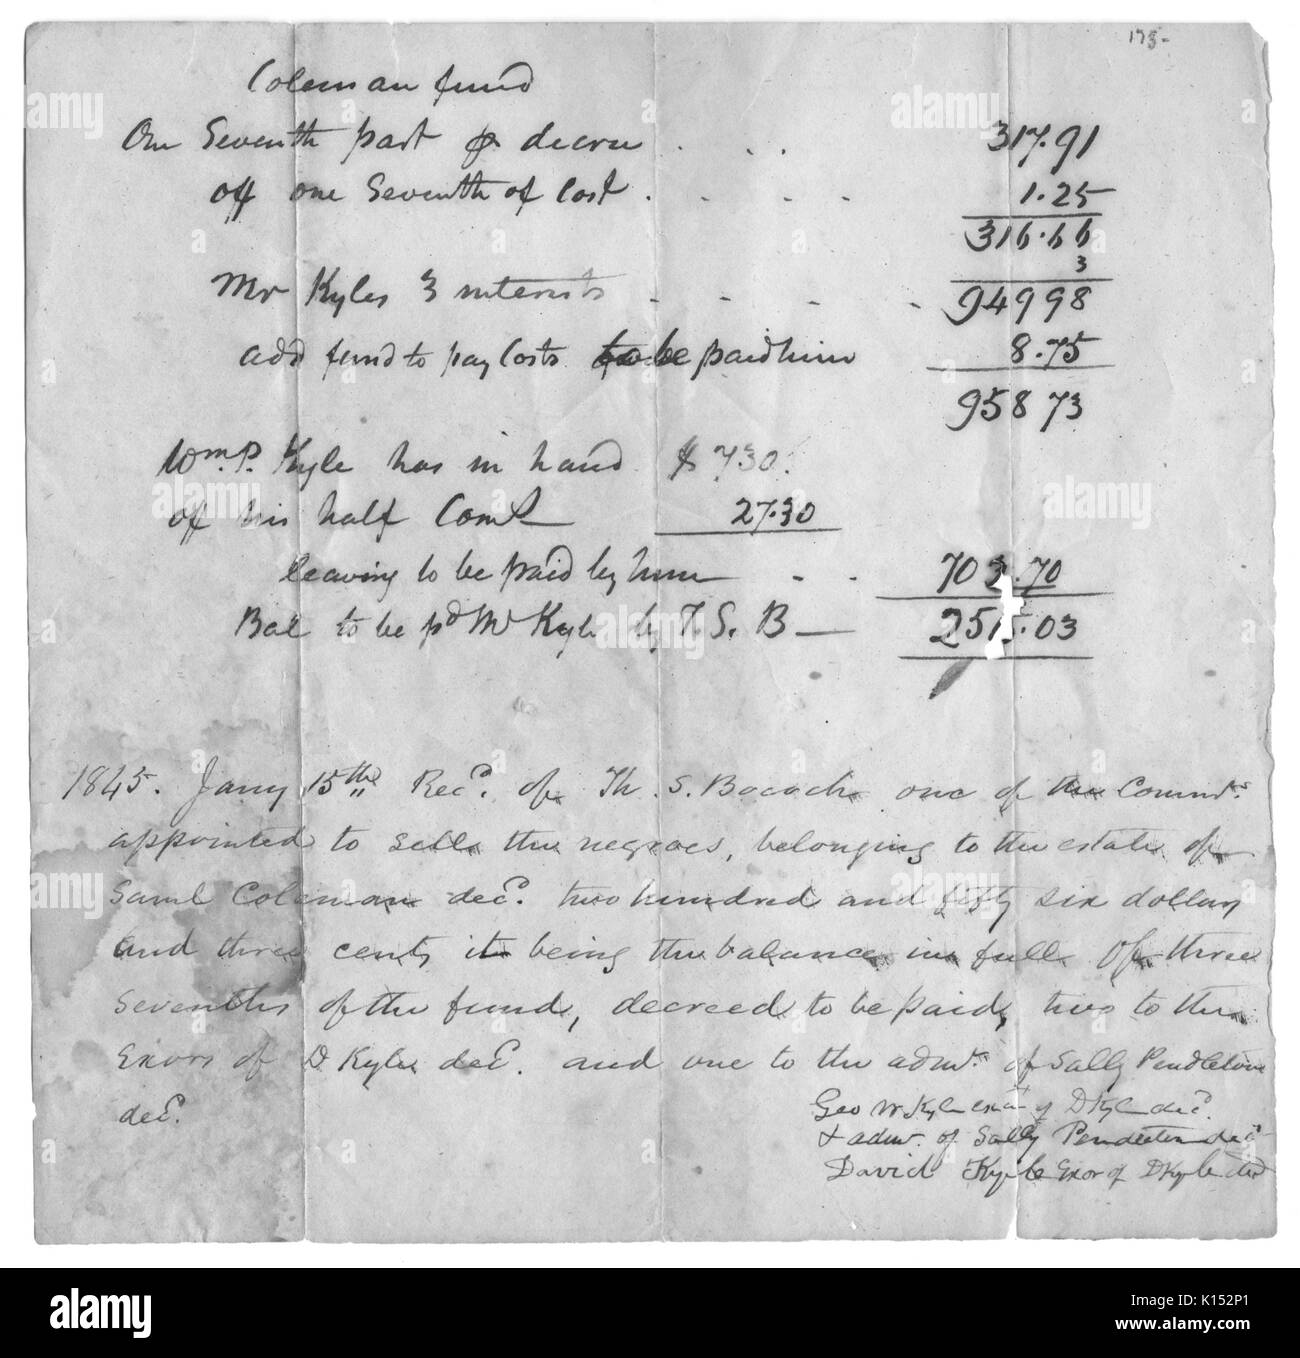 Una scritta a mano fattura di vendita per gli schiavi al fine di saldare un debito immobiliare, 1845. Dalla Biblioteca Pubblica di New York. Foto Stock